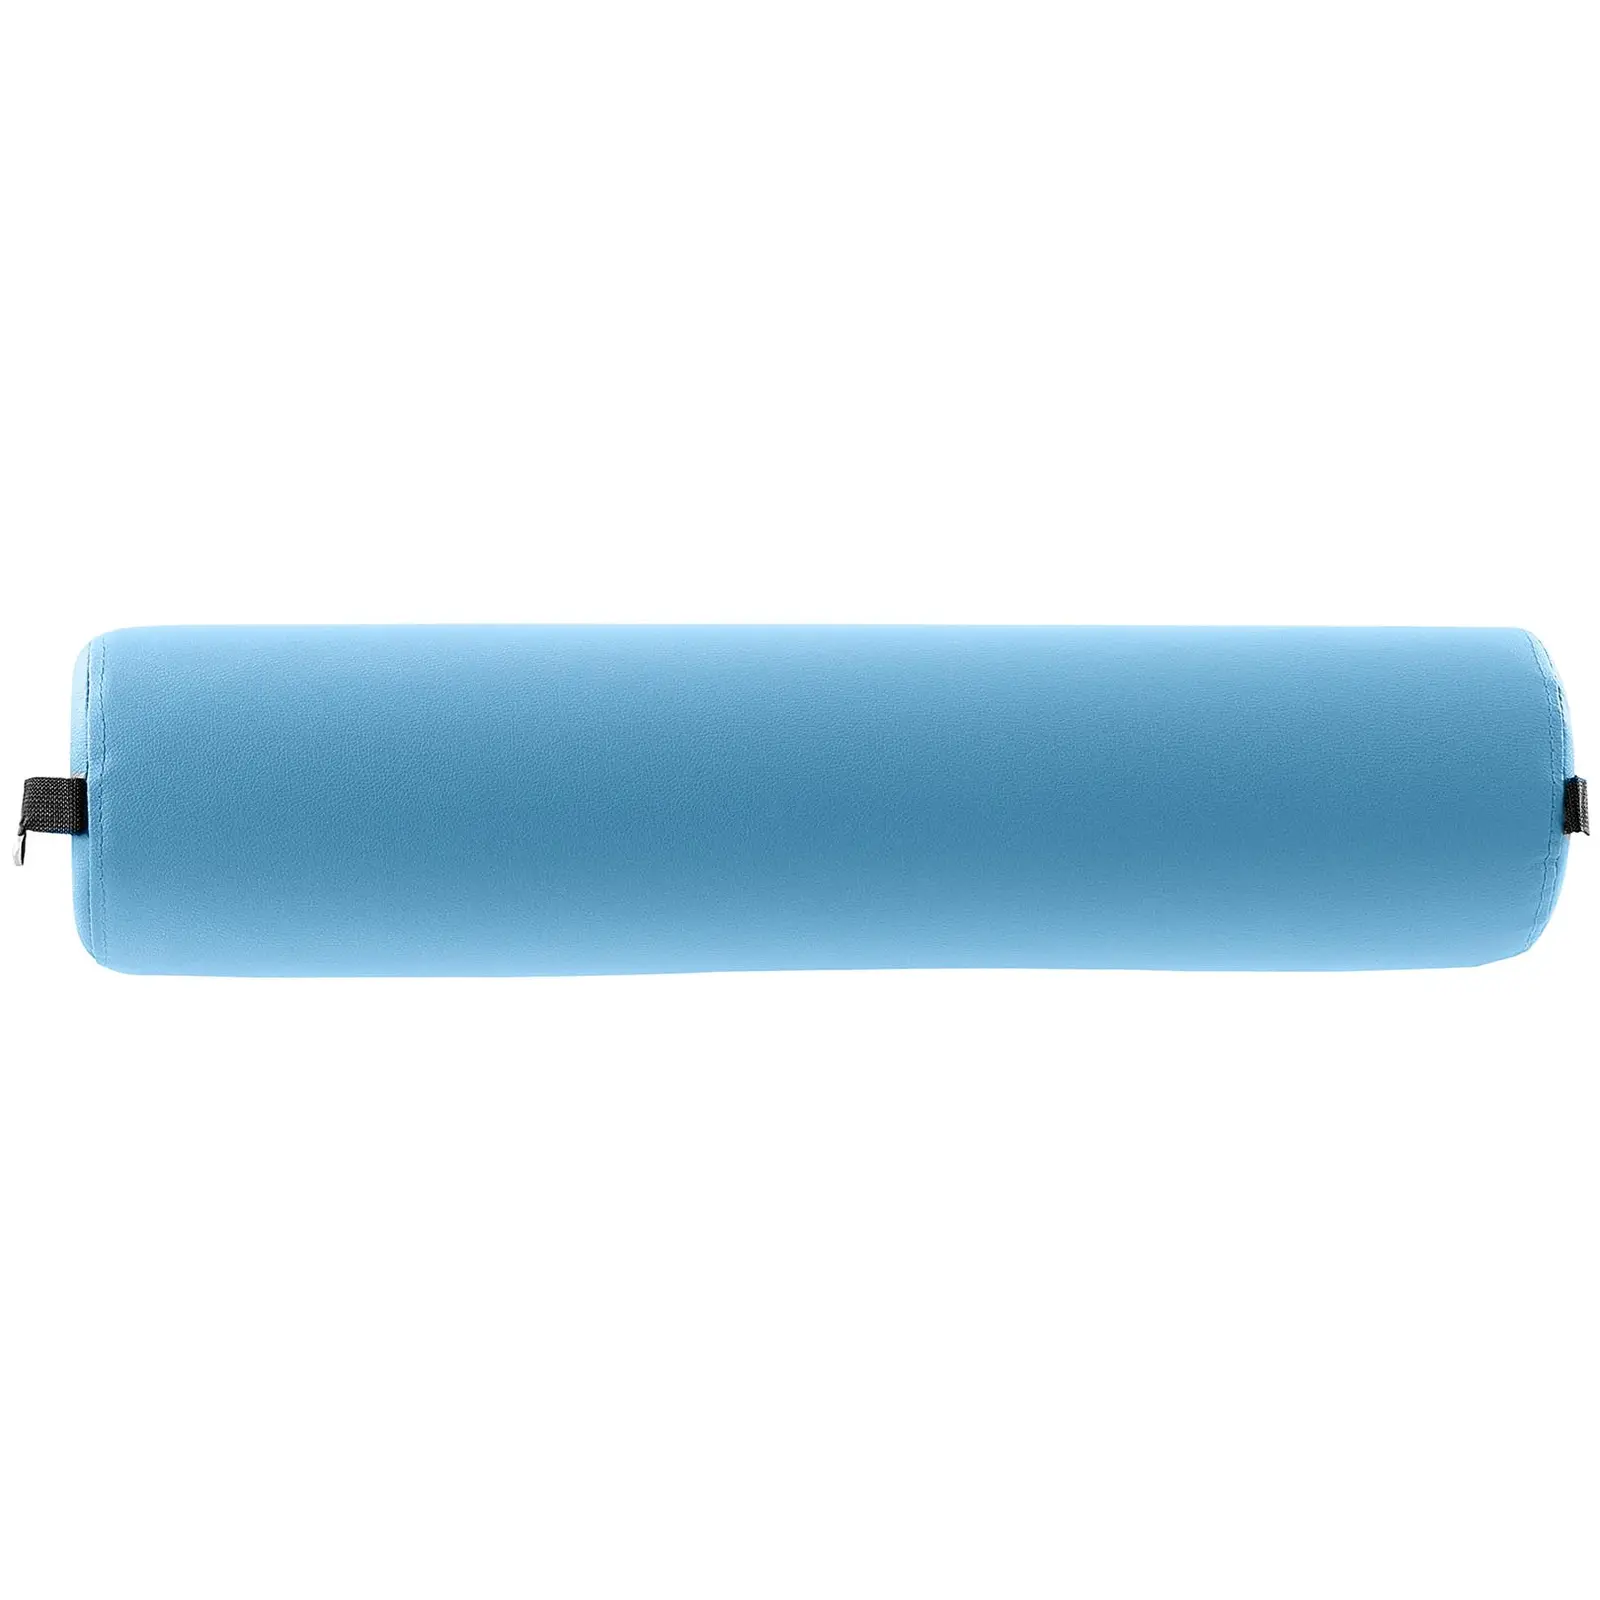 Rouleau de massage - Cylindrique - Turquoise